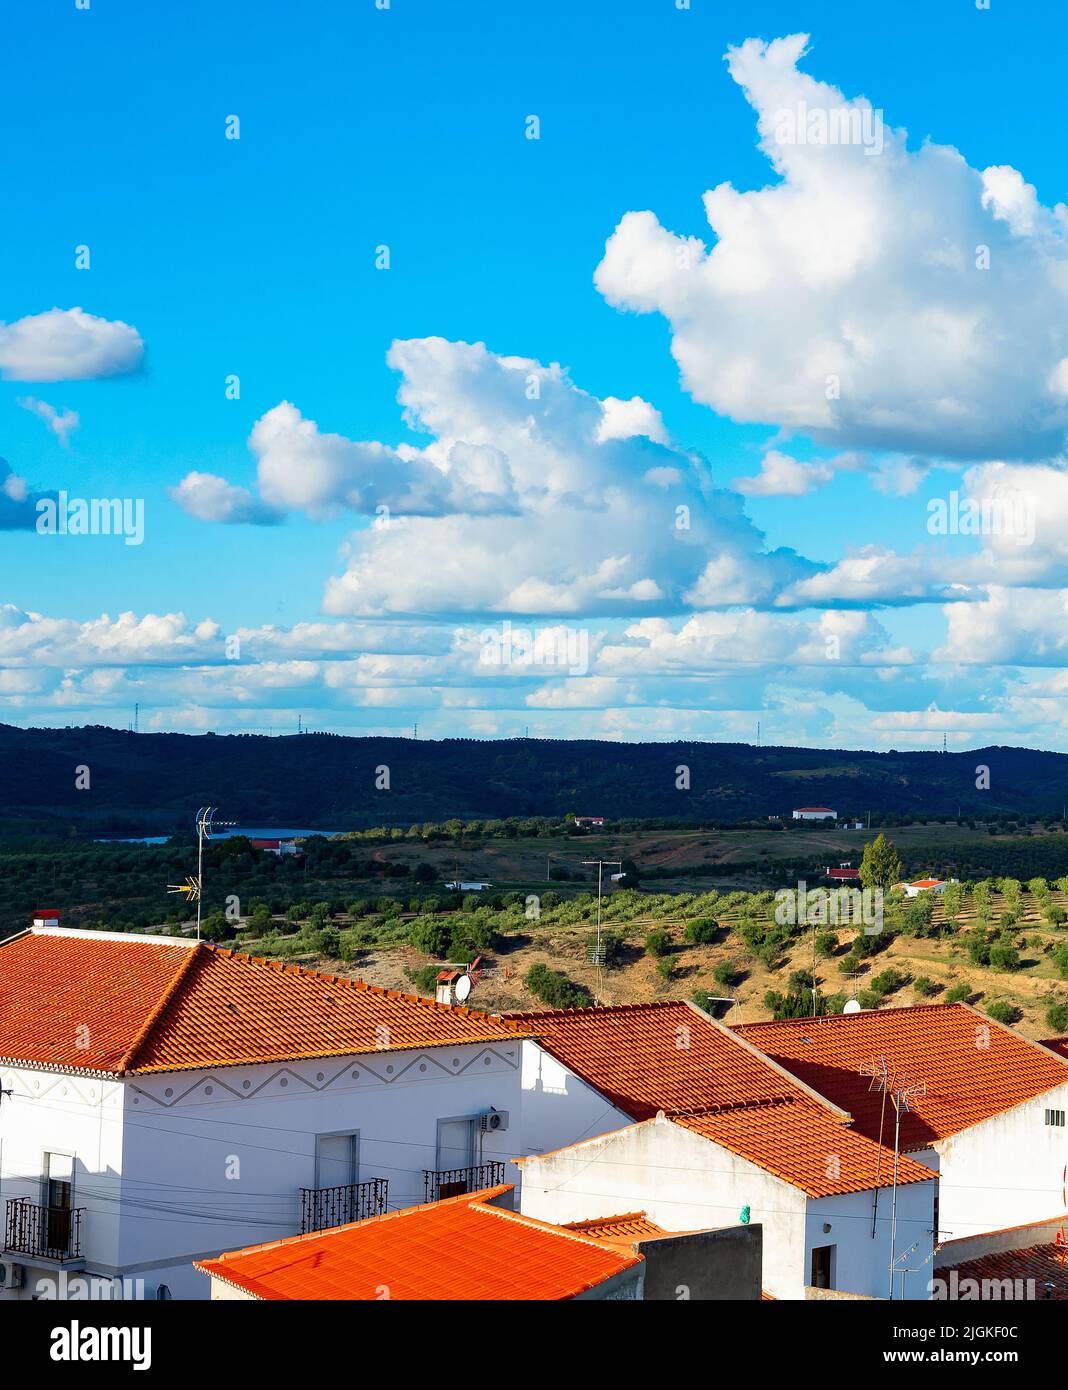 Paisaje natural con vista al pueblo y a los jardines de olivo, montañas y nubes, España Foto de stock